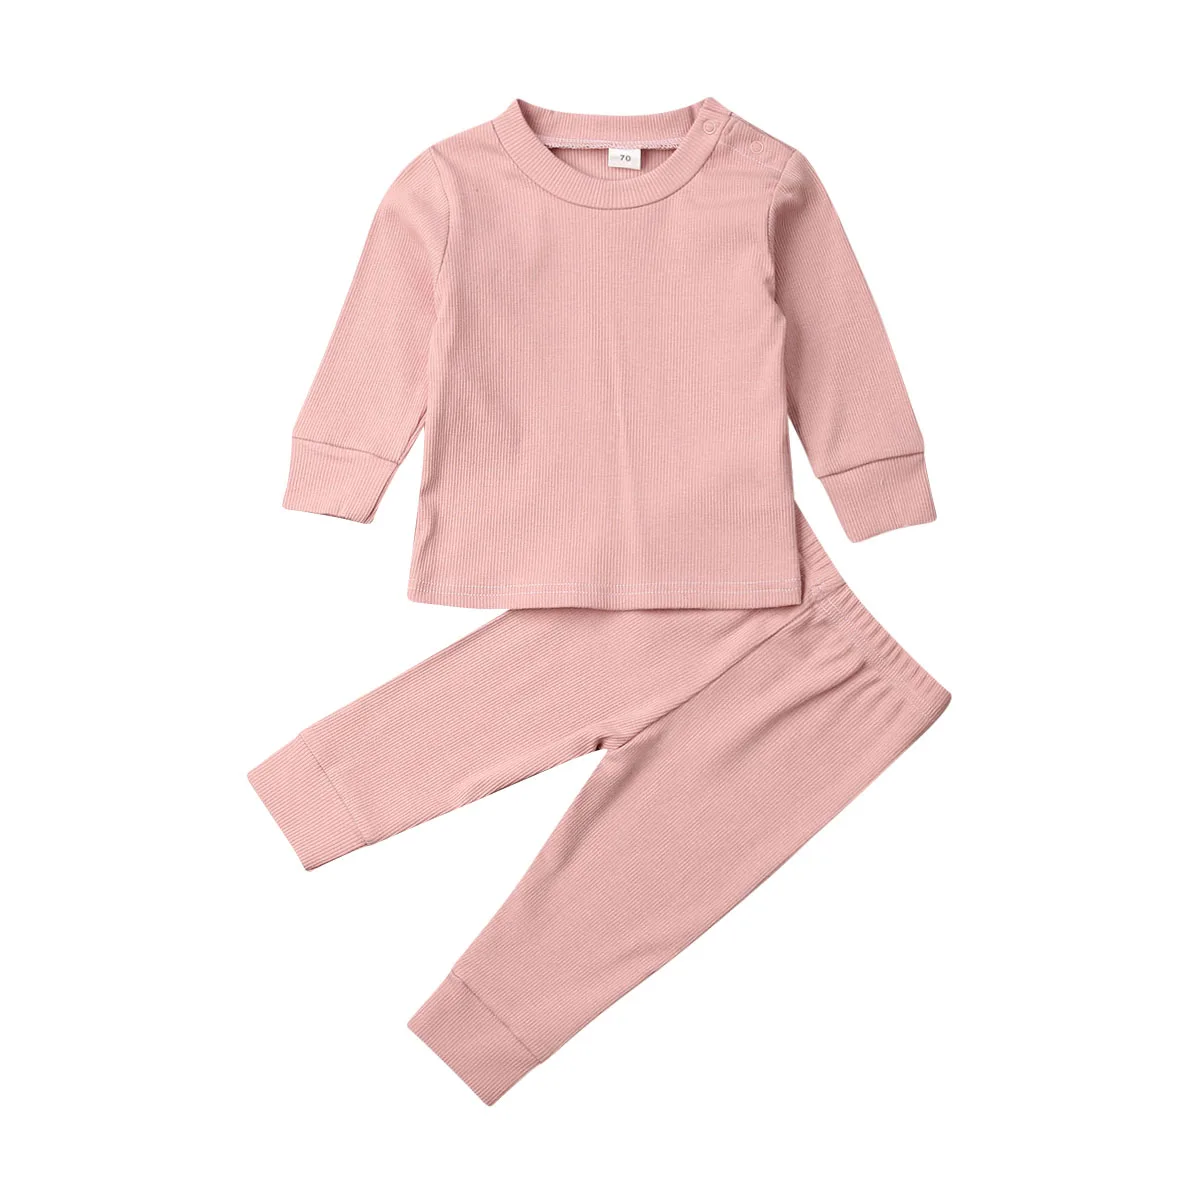 Хлопковые комплекты для маленьких мальчиков и девочек осенняя одежда рубашки с длинными рукавами+ штаны Твердые наряды спортивные костюмы для активных детей от 0 до 24 месяцев - Цвет: Розовый